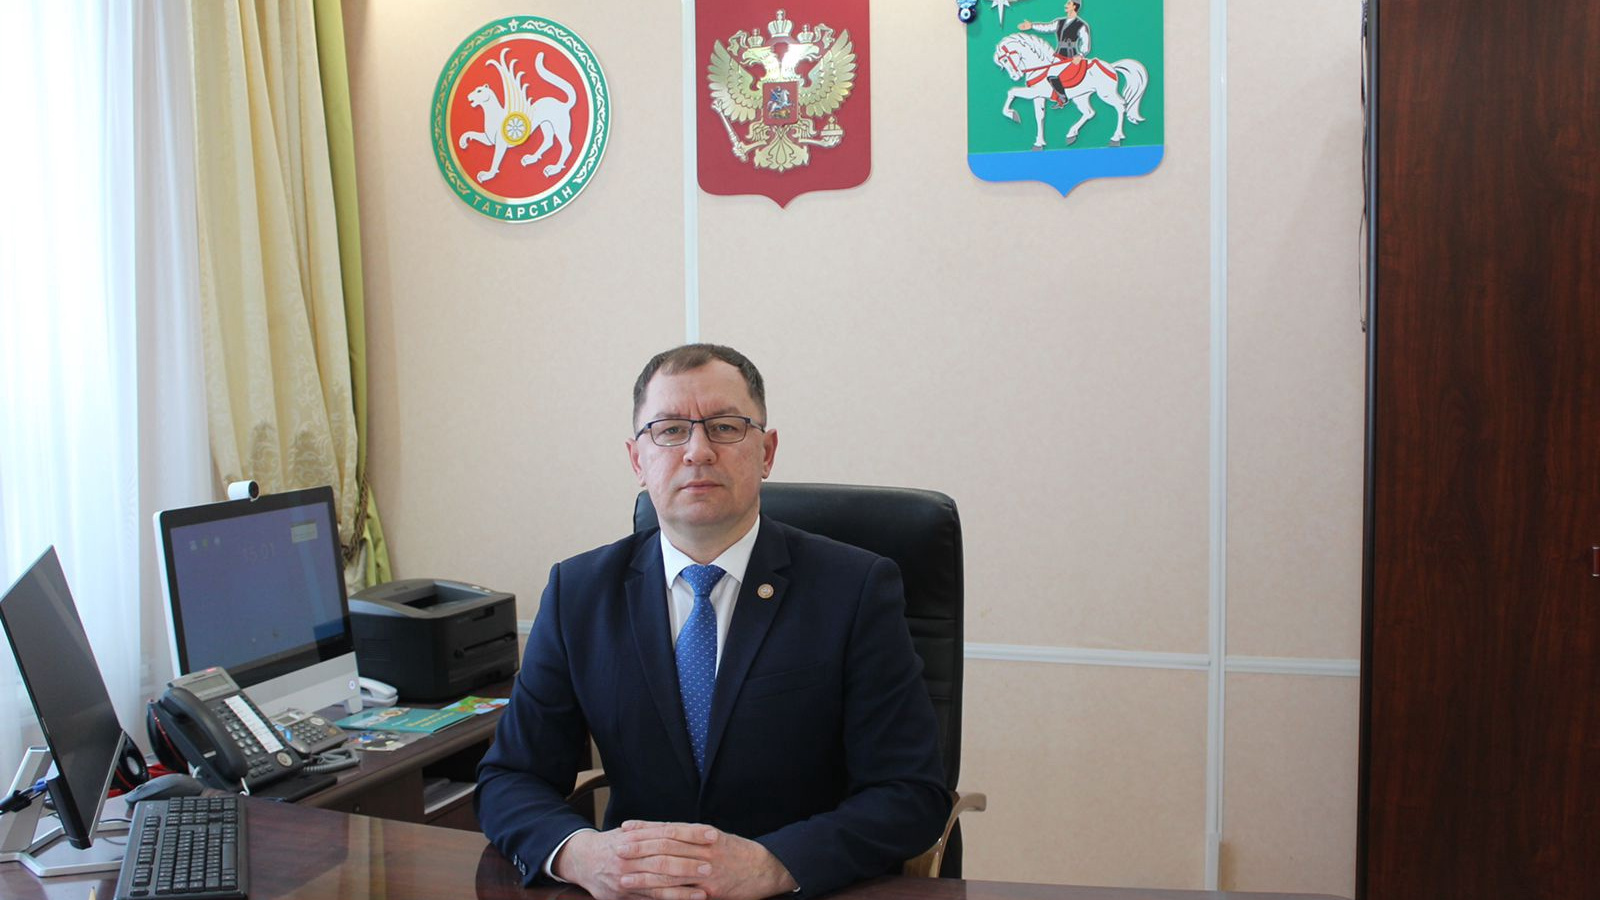 «Кто-то хотел обогатиться»: экс-глава района в Татарстане рассказал о коррупции среди подчиненных